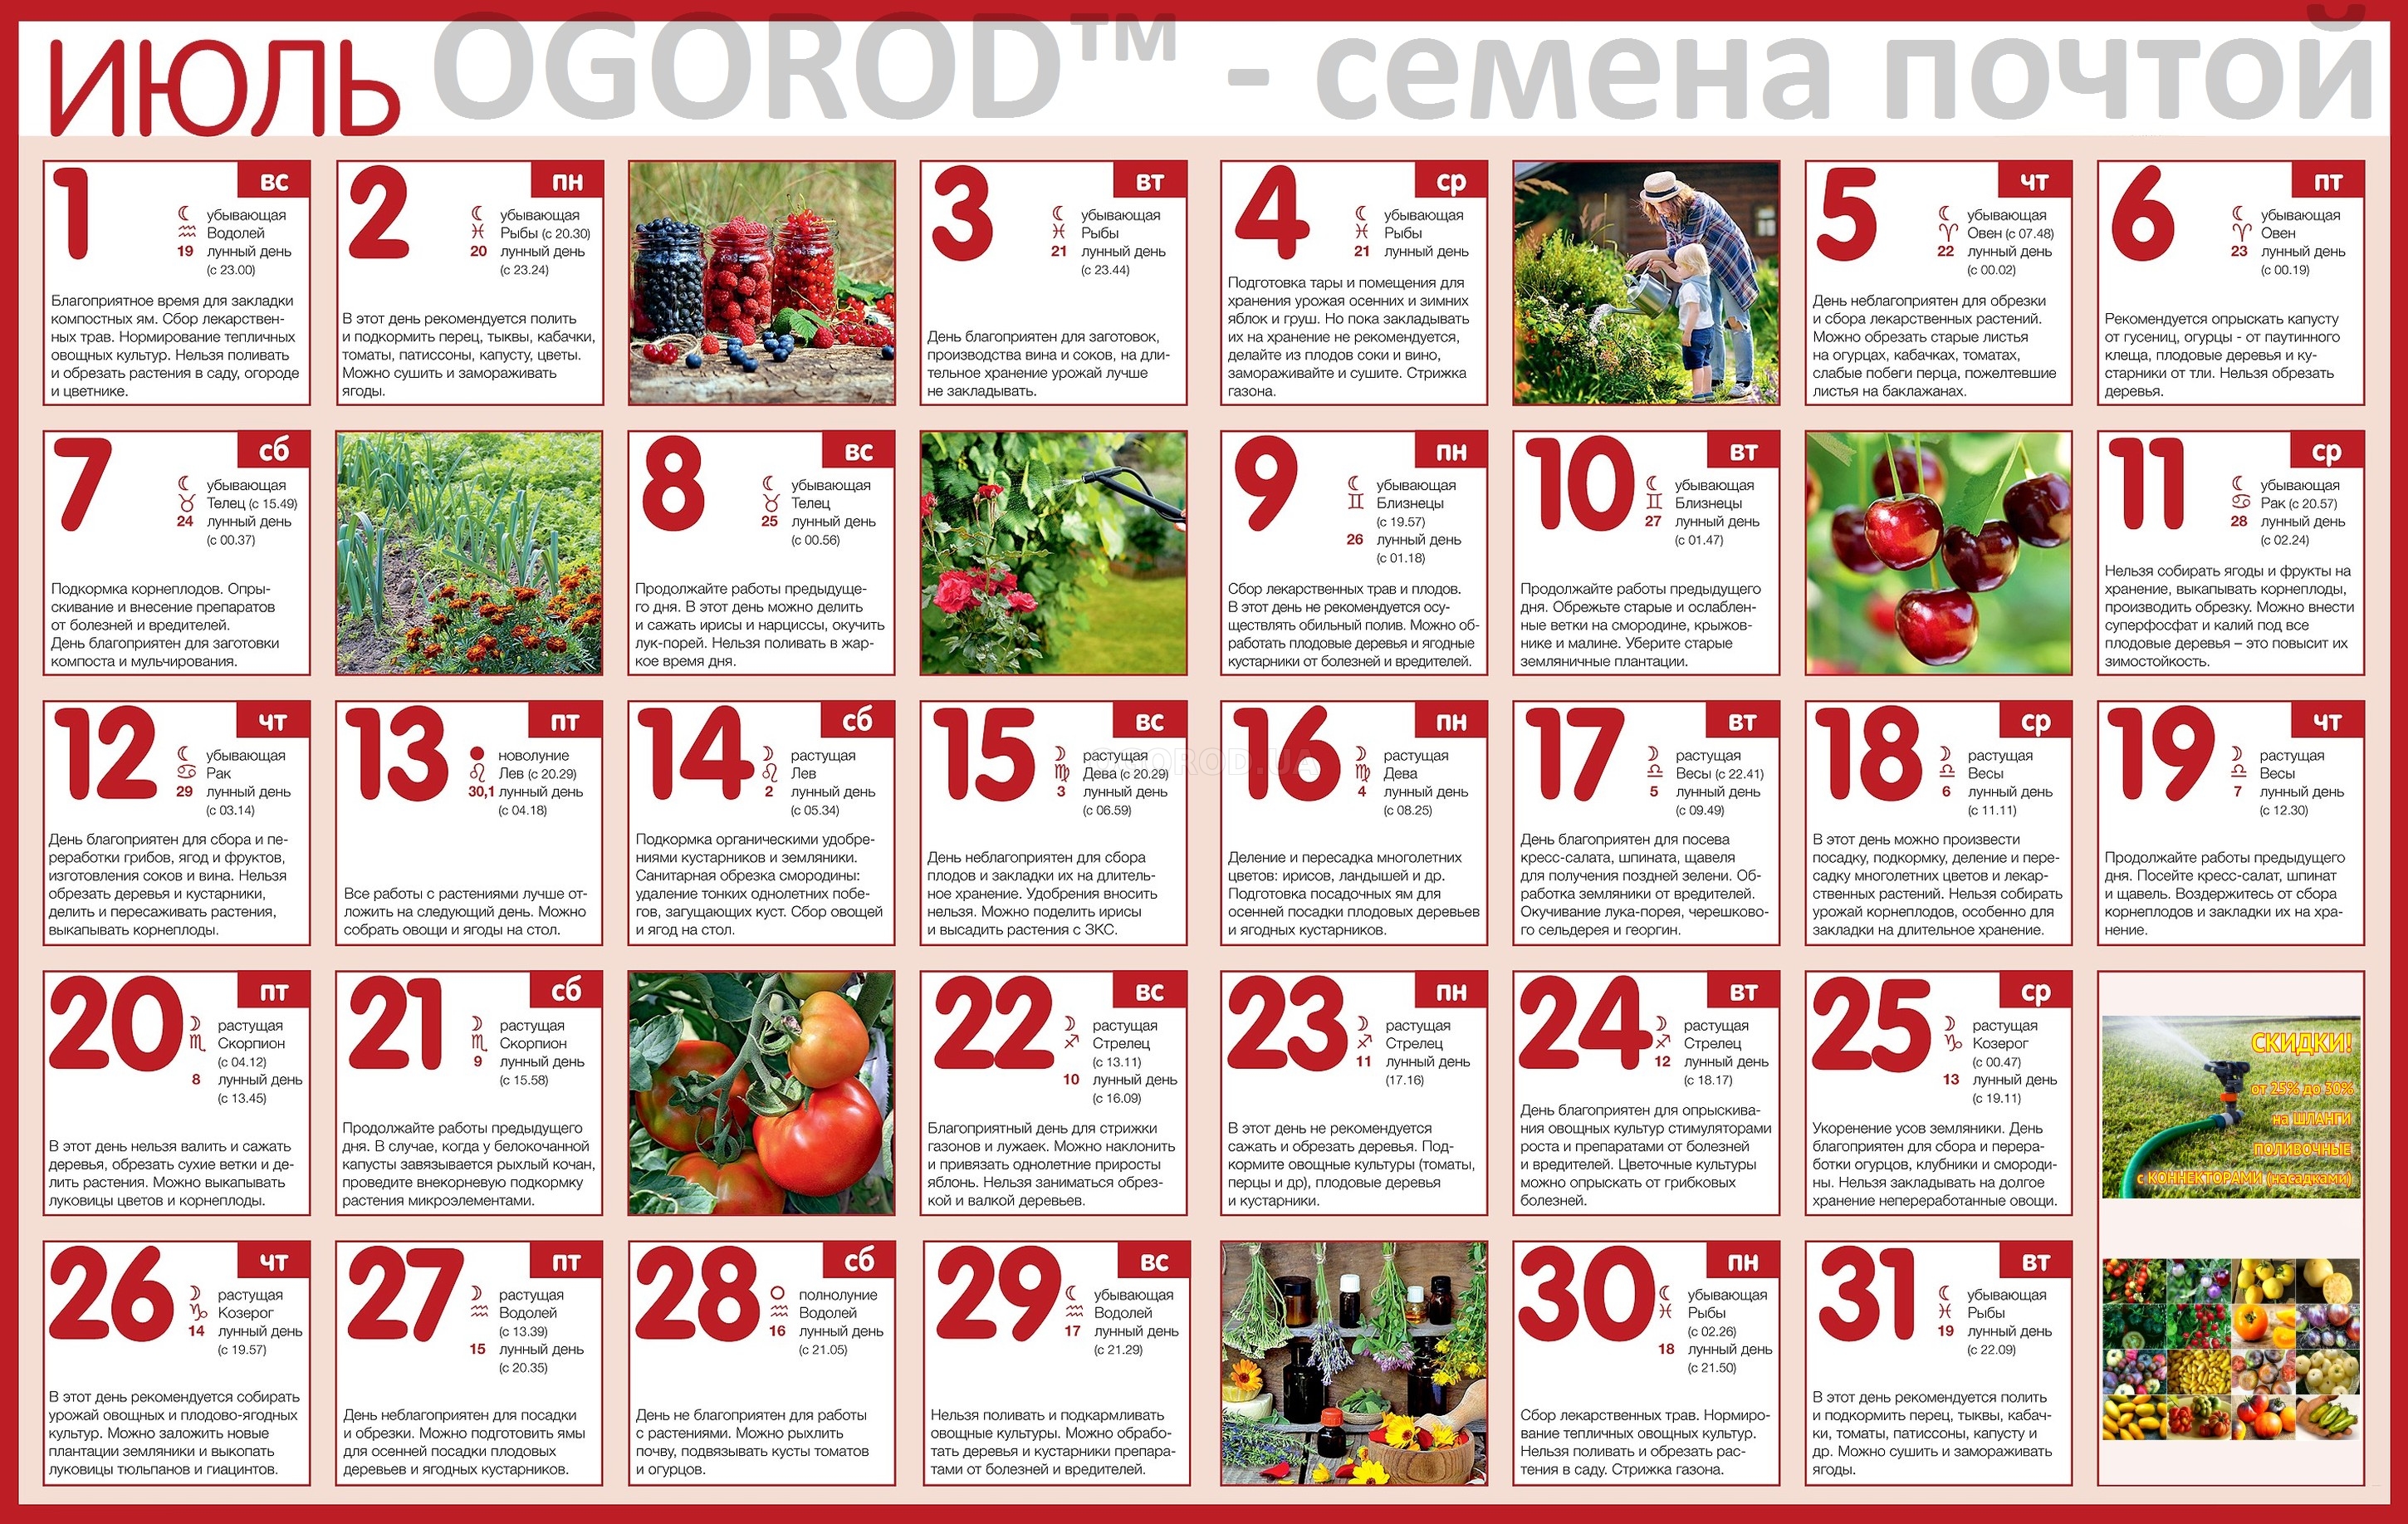 Огородный календарь на июль 2018